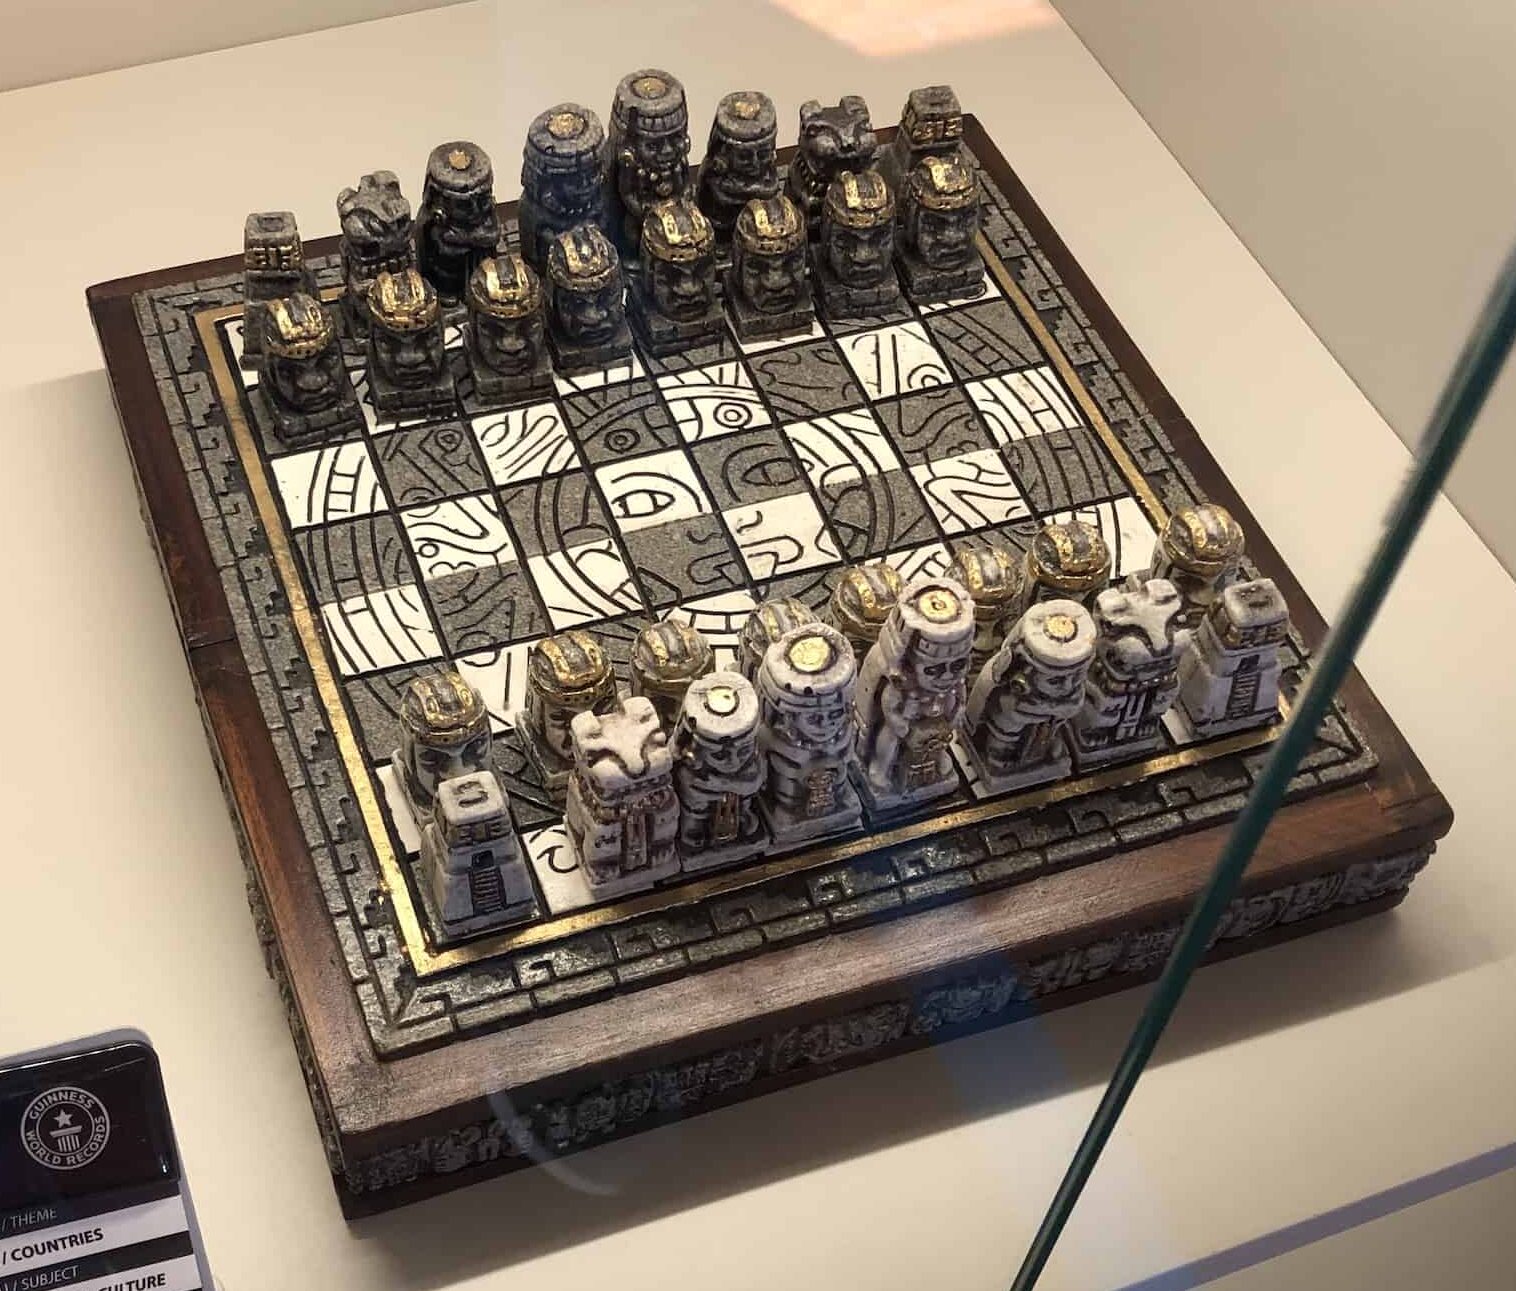 Stone chess set (Mexico) at the Gökyay Foundation Chess Museum in Ankara, Turkey